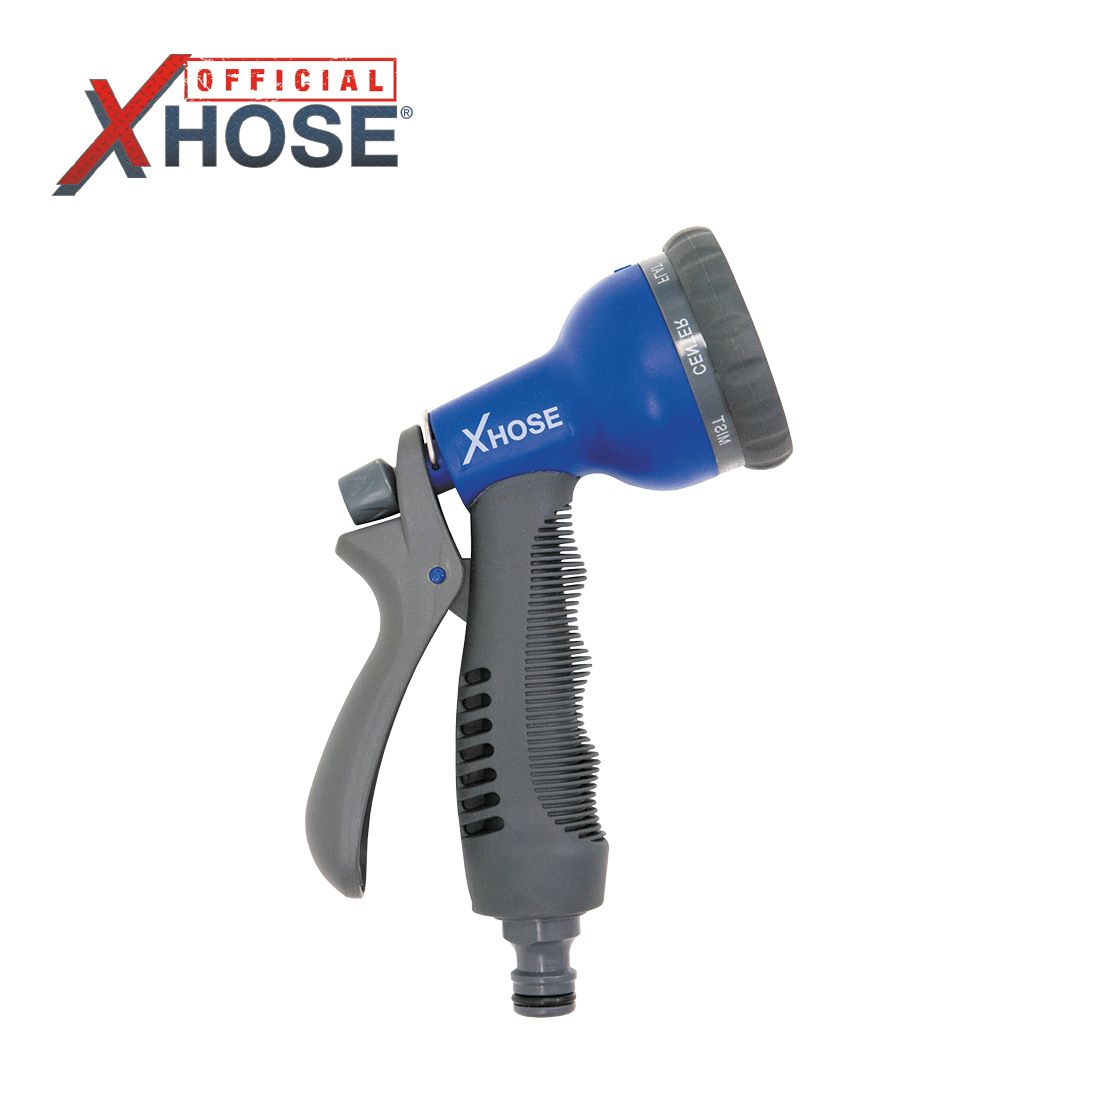  XHose 8 Speed Spray Nozzle